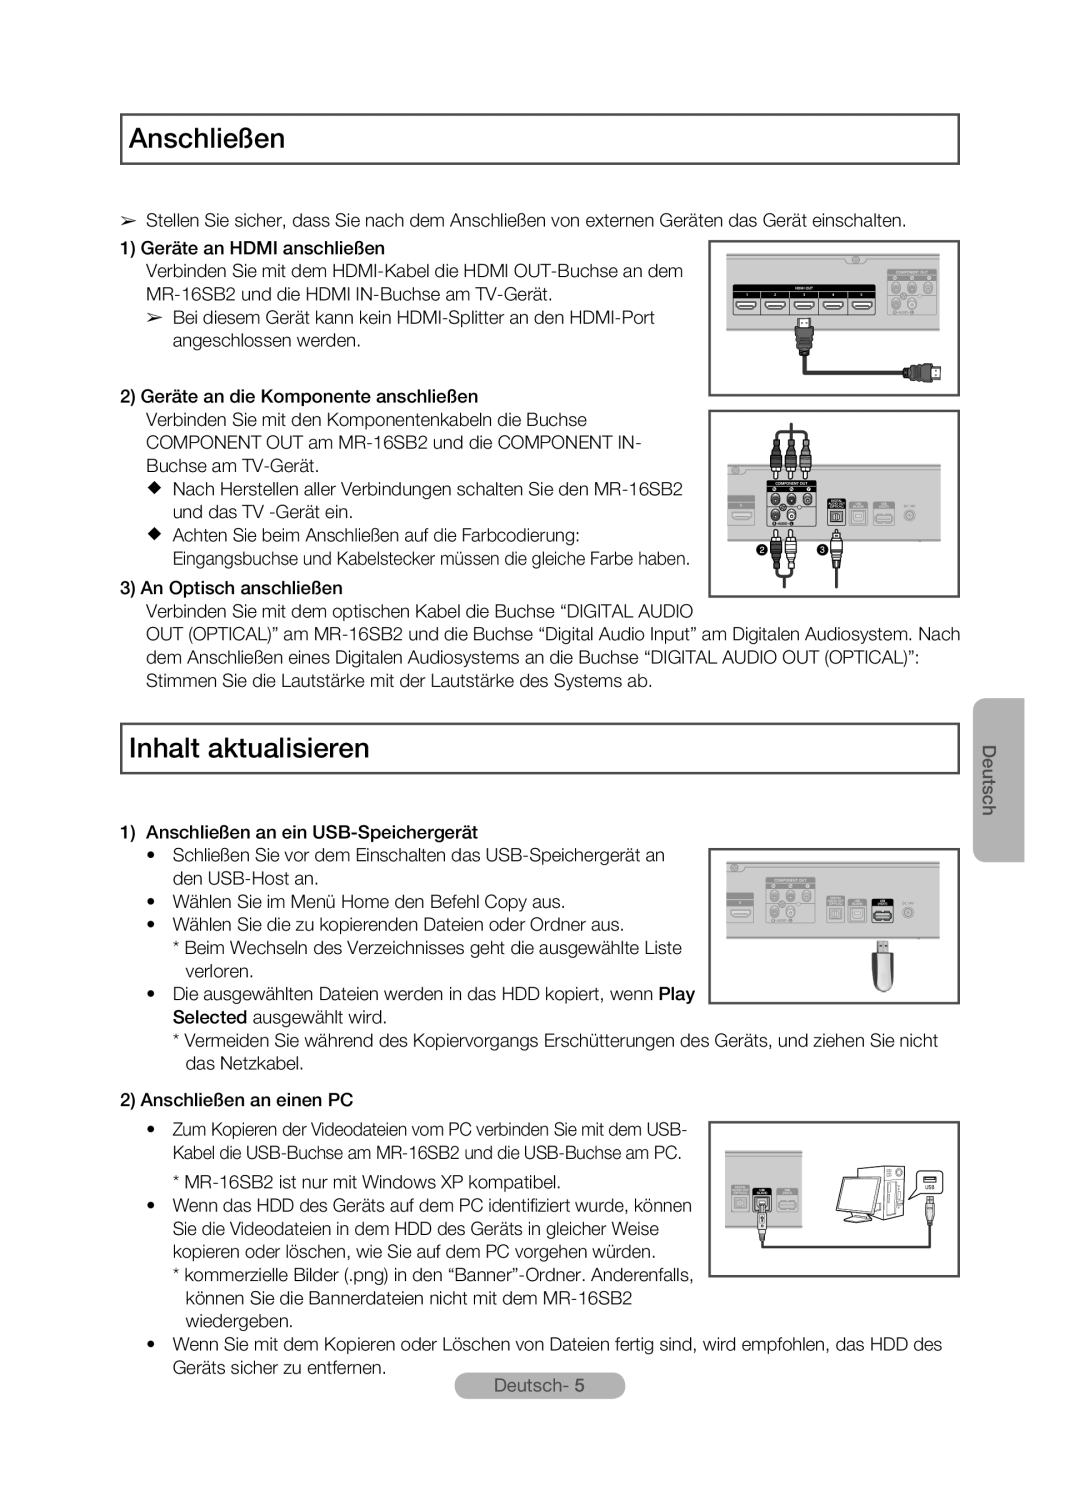 Samsung MR-16SB2 manual Anschließen, Inhalt aktualisieren, Deutsch 